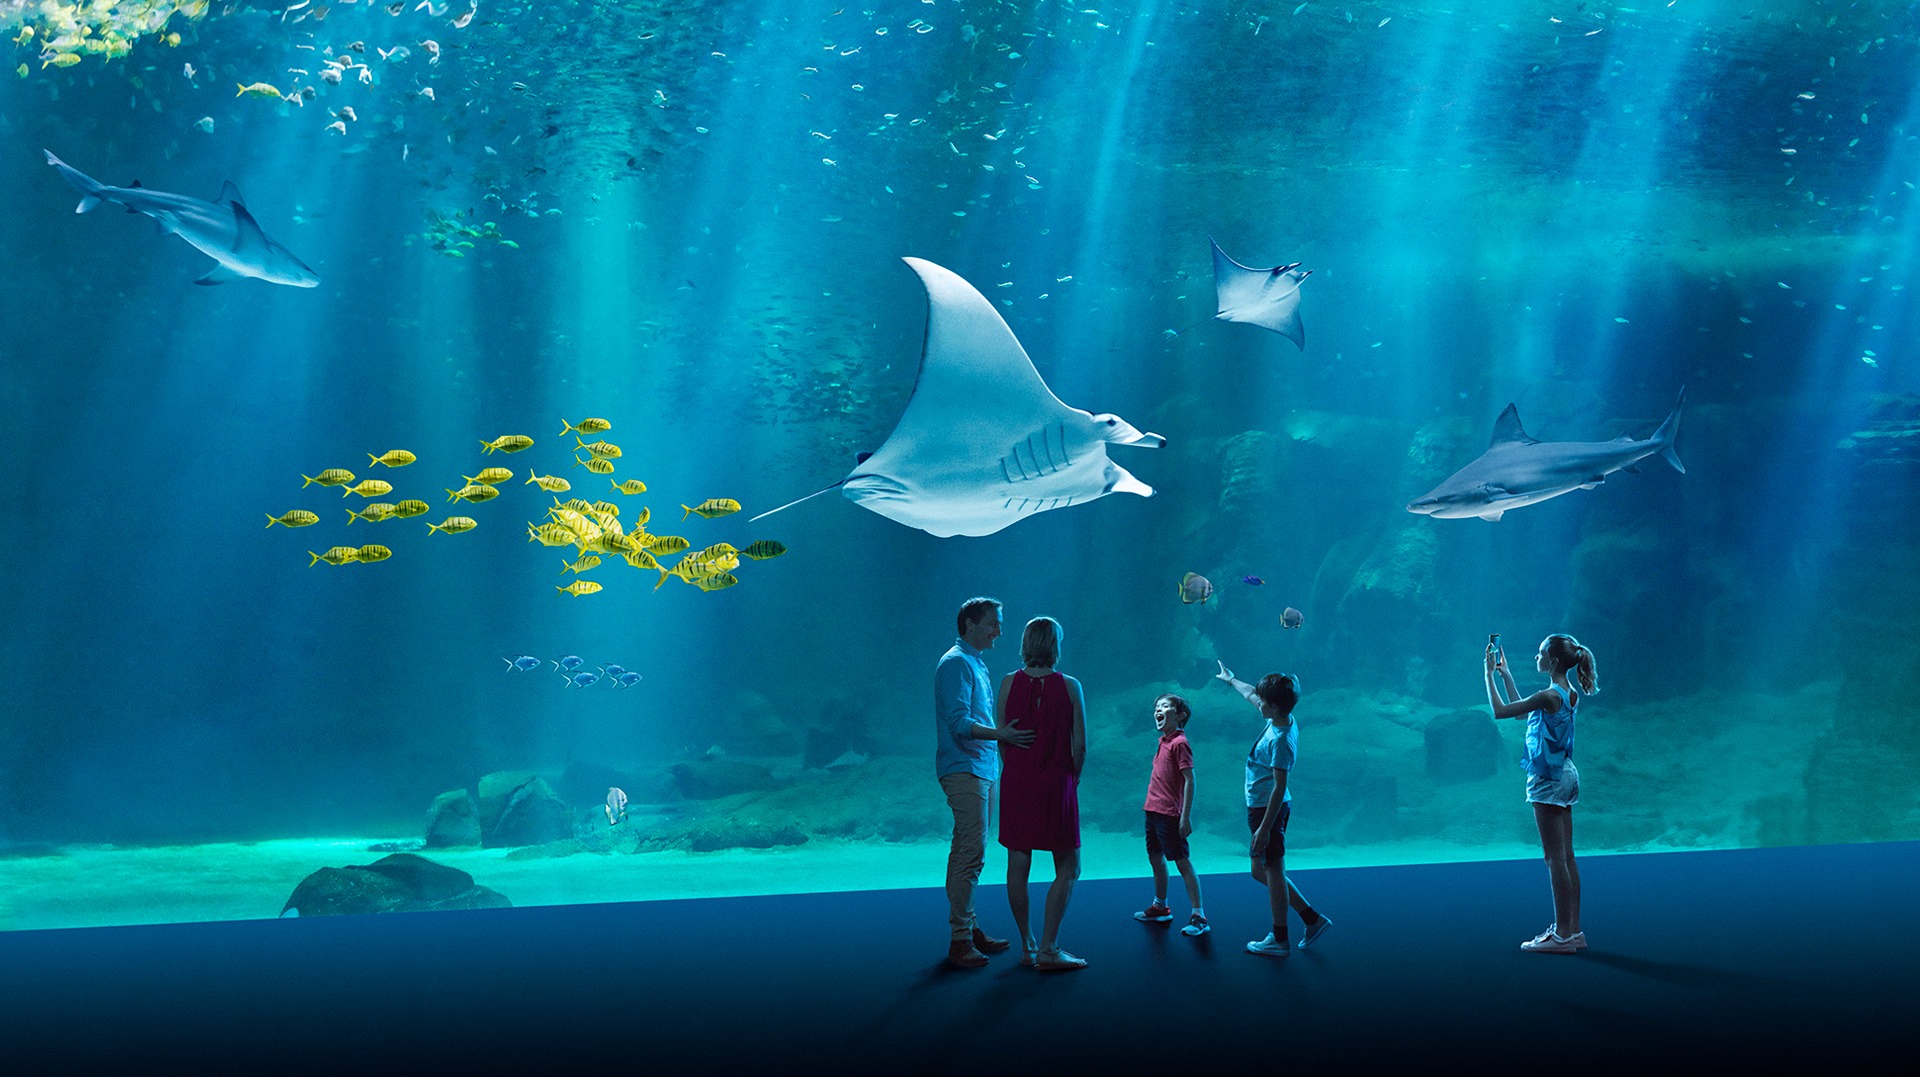 L'un des plus grands aquariums de France se trouve sur la côte d'Opale : Nausicaa à Boulogne-sur-Mer est une sortie idéale pour petits et grands, en famille ou en groupe.